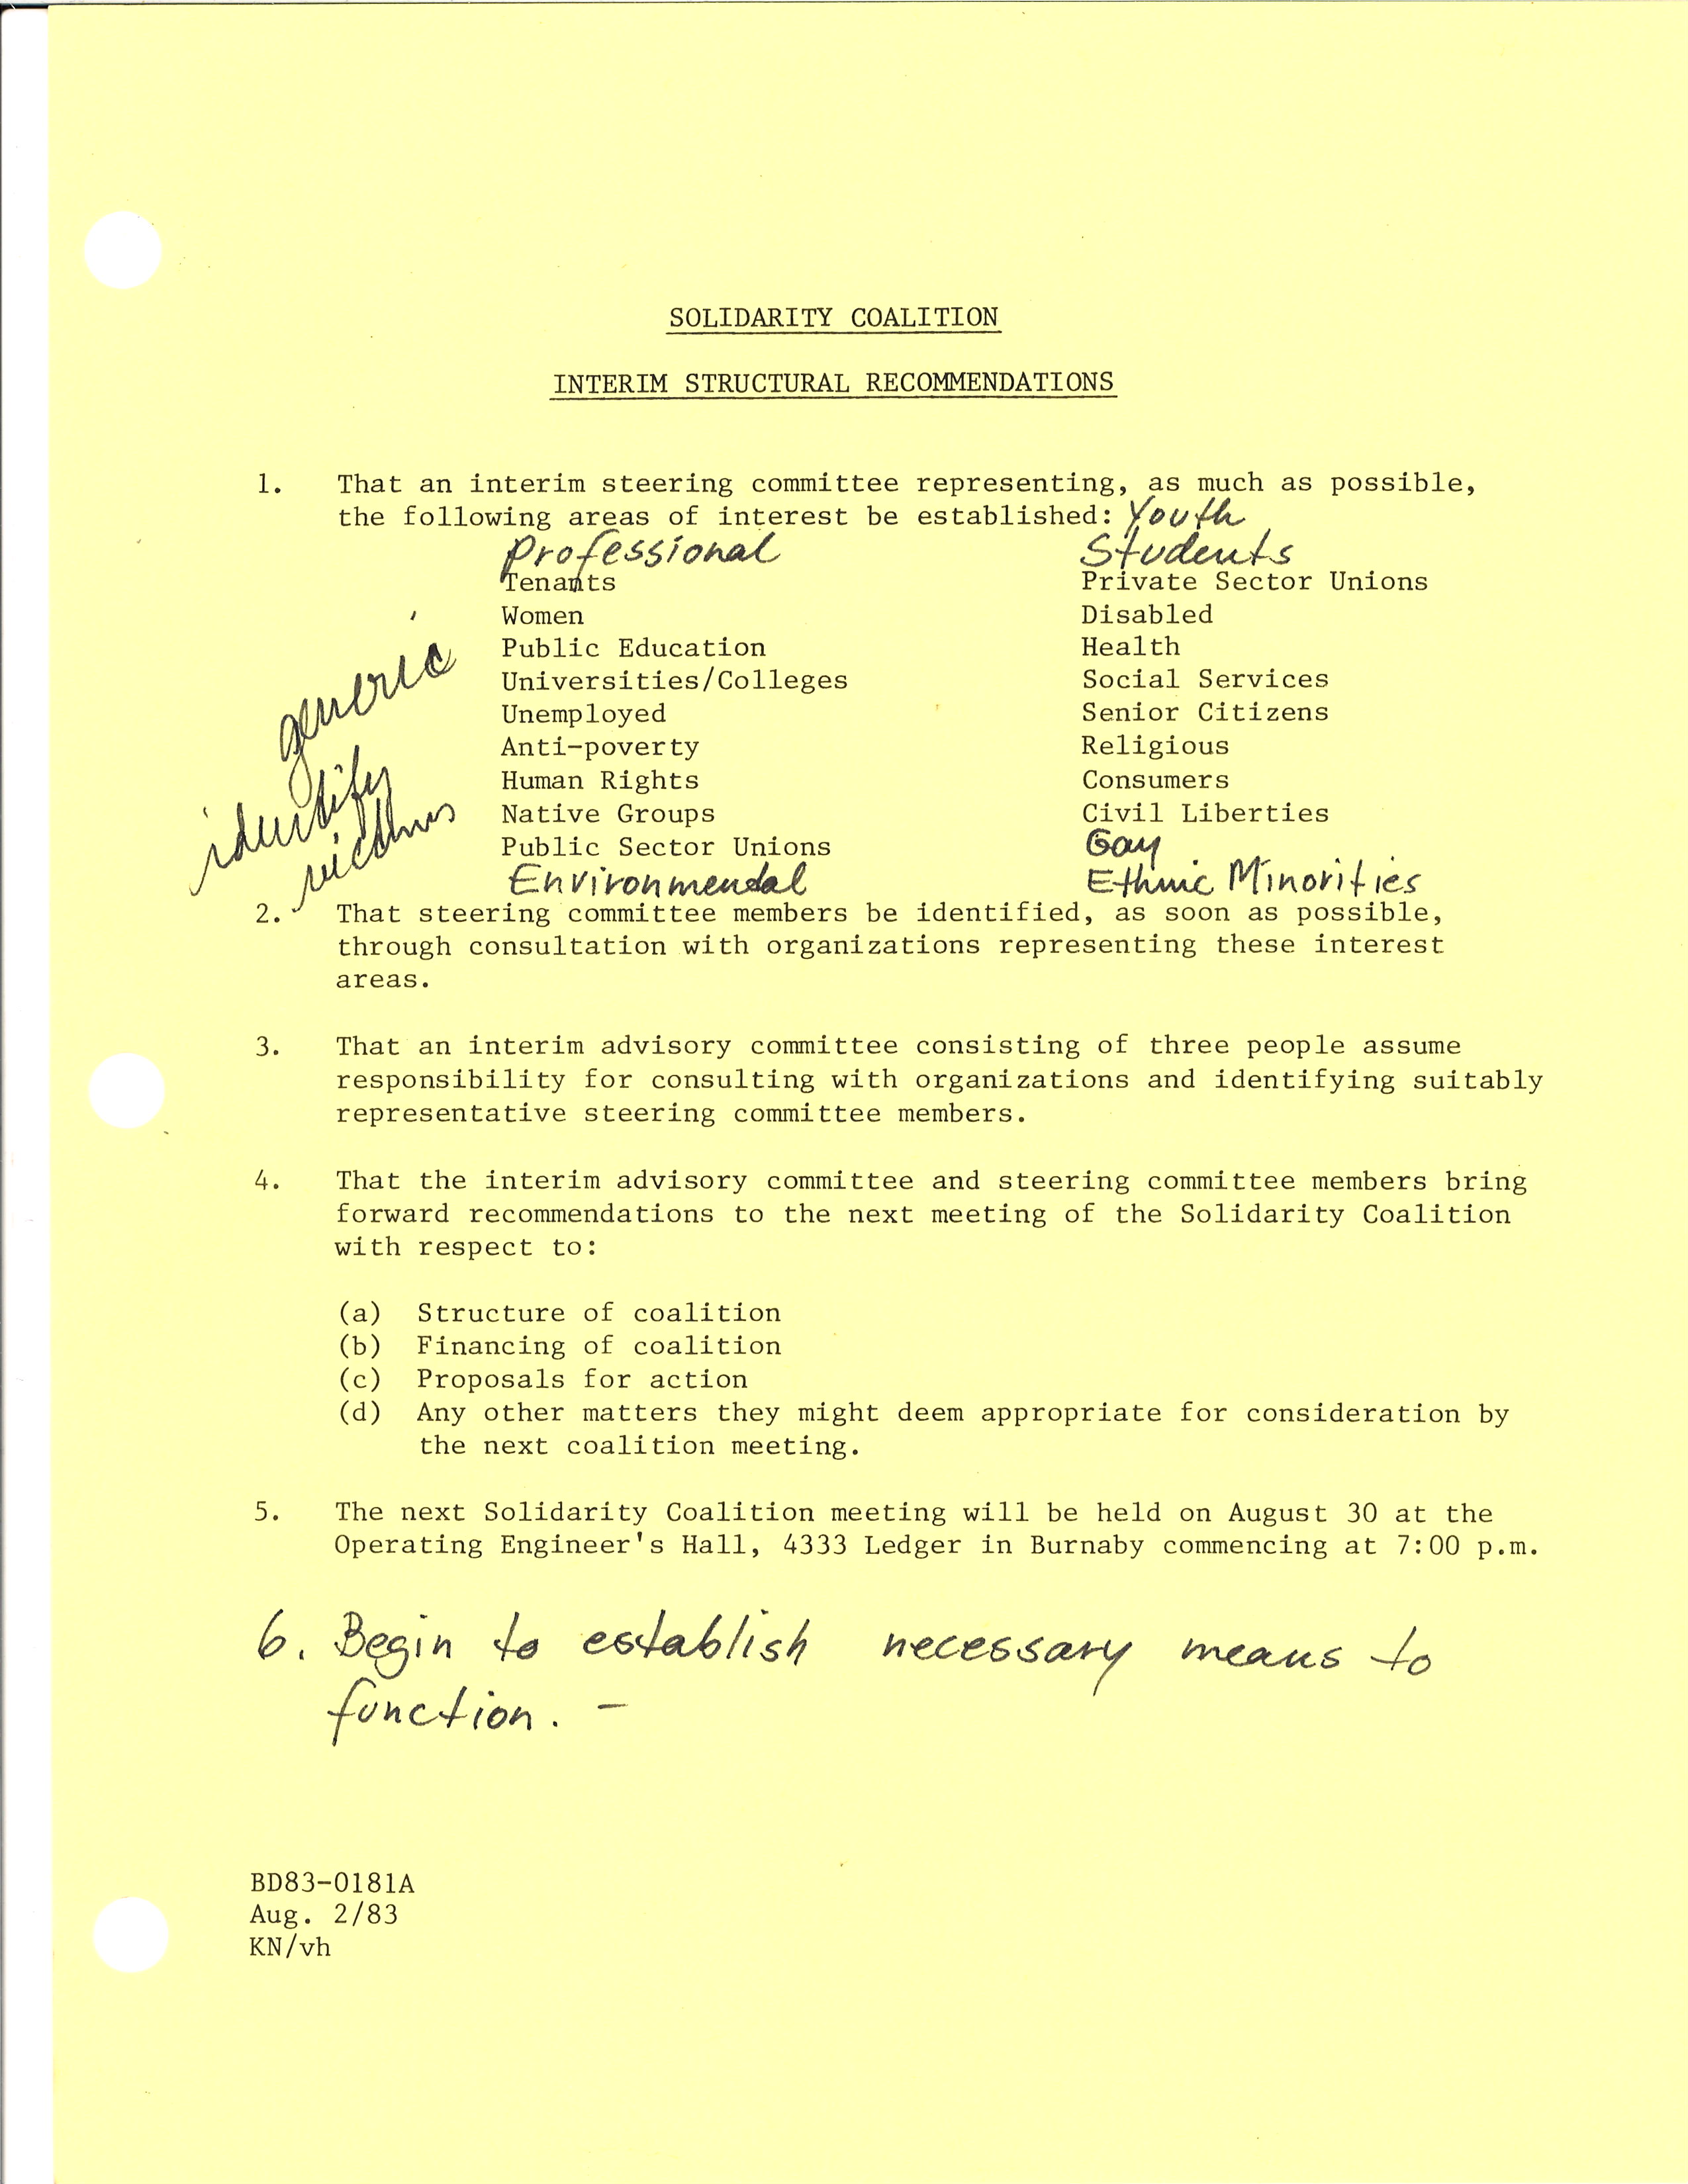 Une feuille dactylographiée avec des notes manuscrites est datée du 2 août 1983 et est intitulée « Les recommandations structurelles provisoires de la Solidarity Coalition ». 